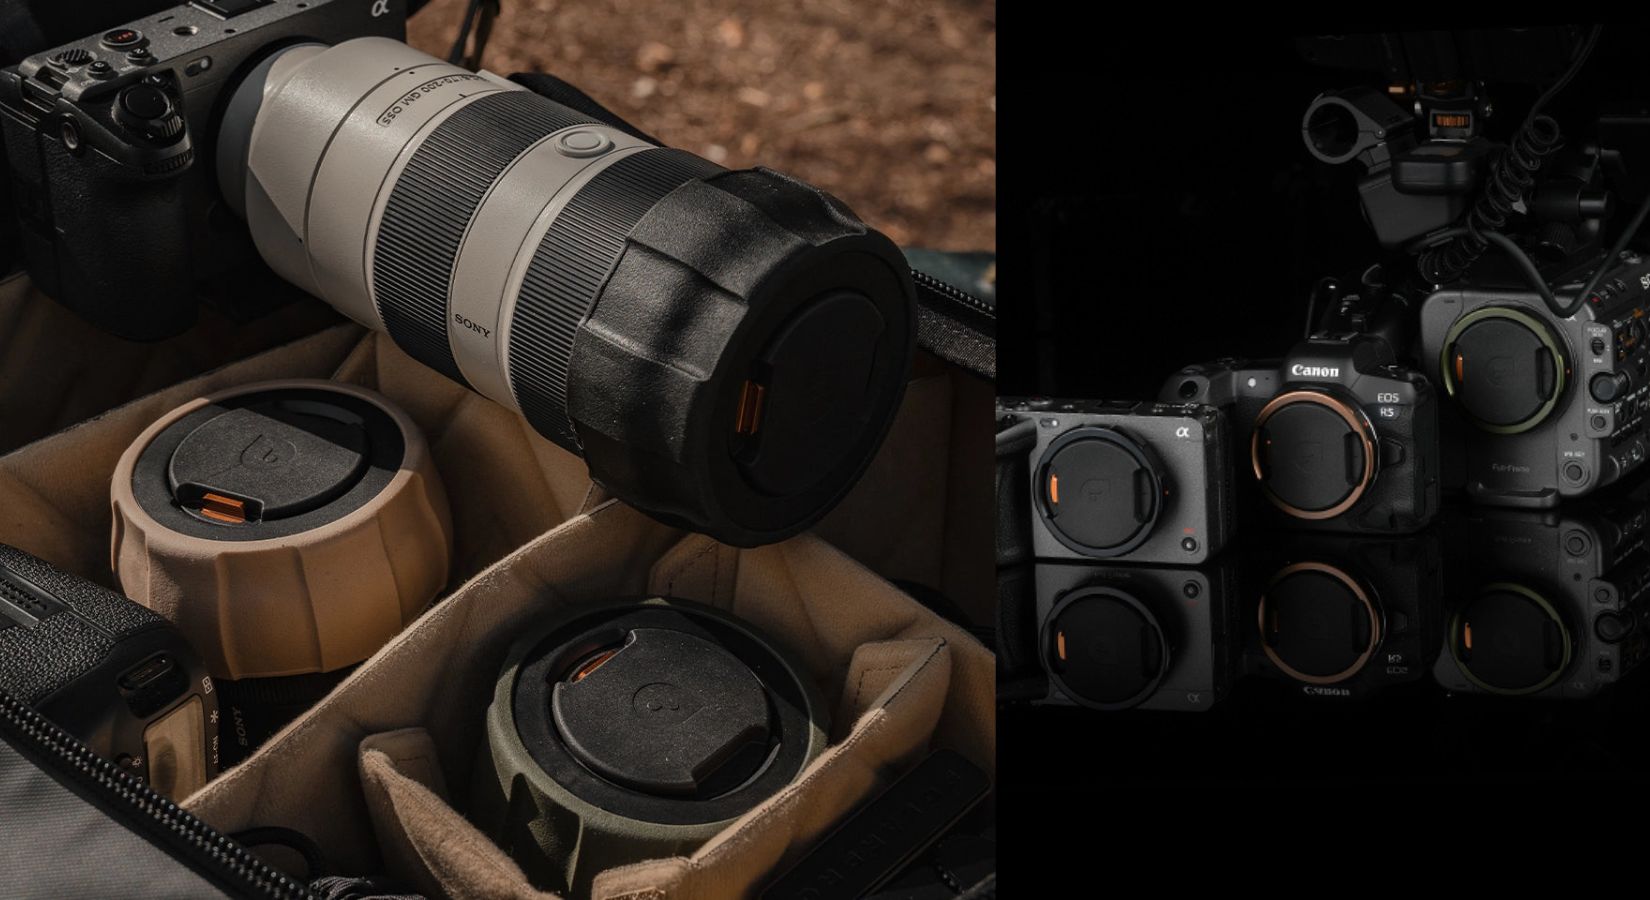 「Defender Pro レンズカバー & ボディーキャップ」が登場。AirTag/メモリーカード収納用の隠しストレージが搭載された新しいカメラレンズ保護用ギア